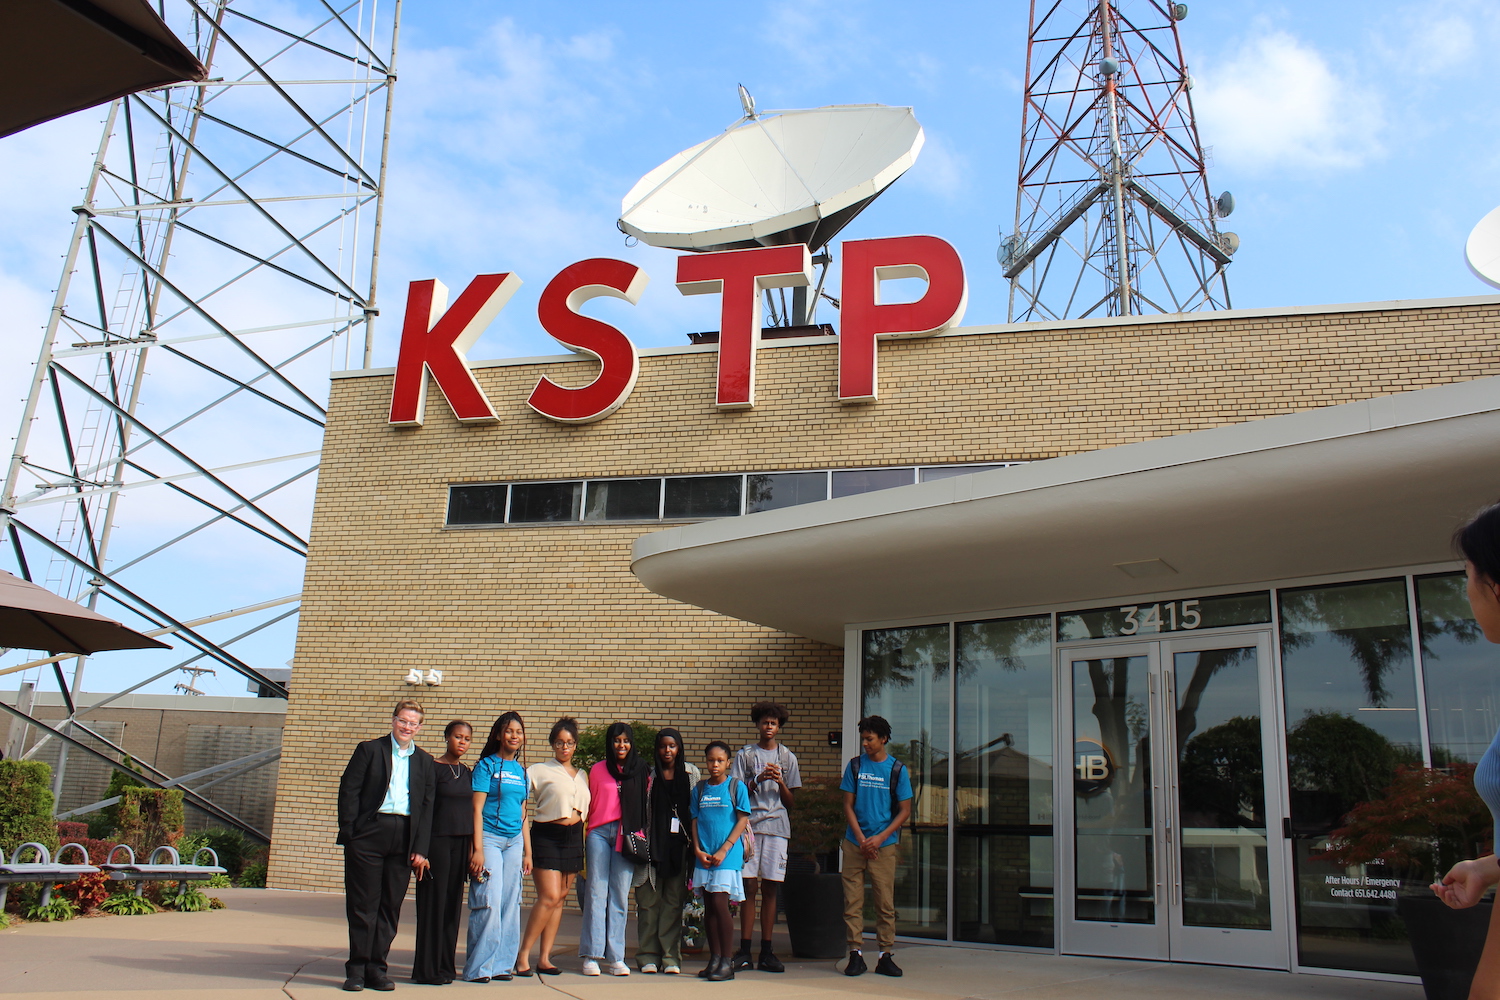 TV Camp at KSTP 23